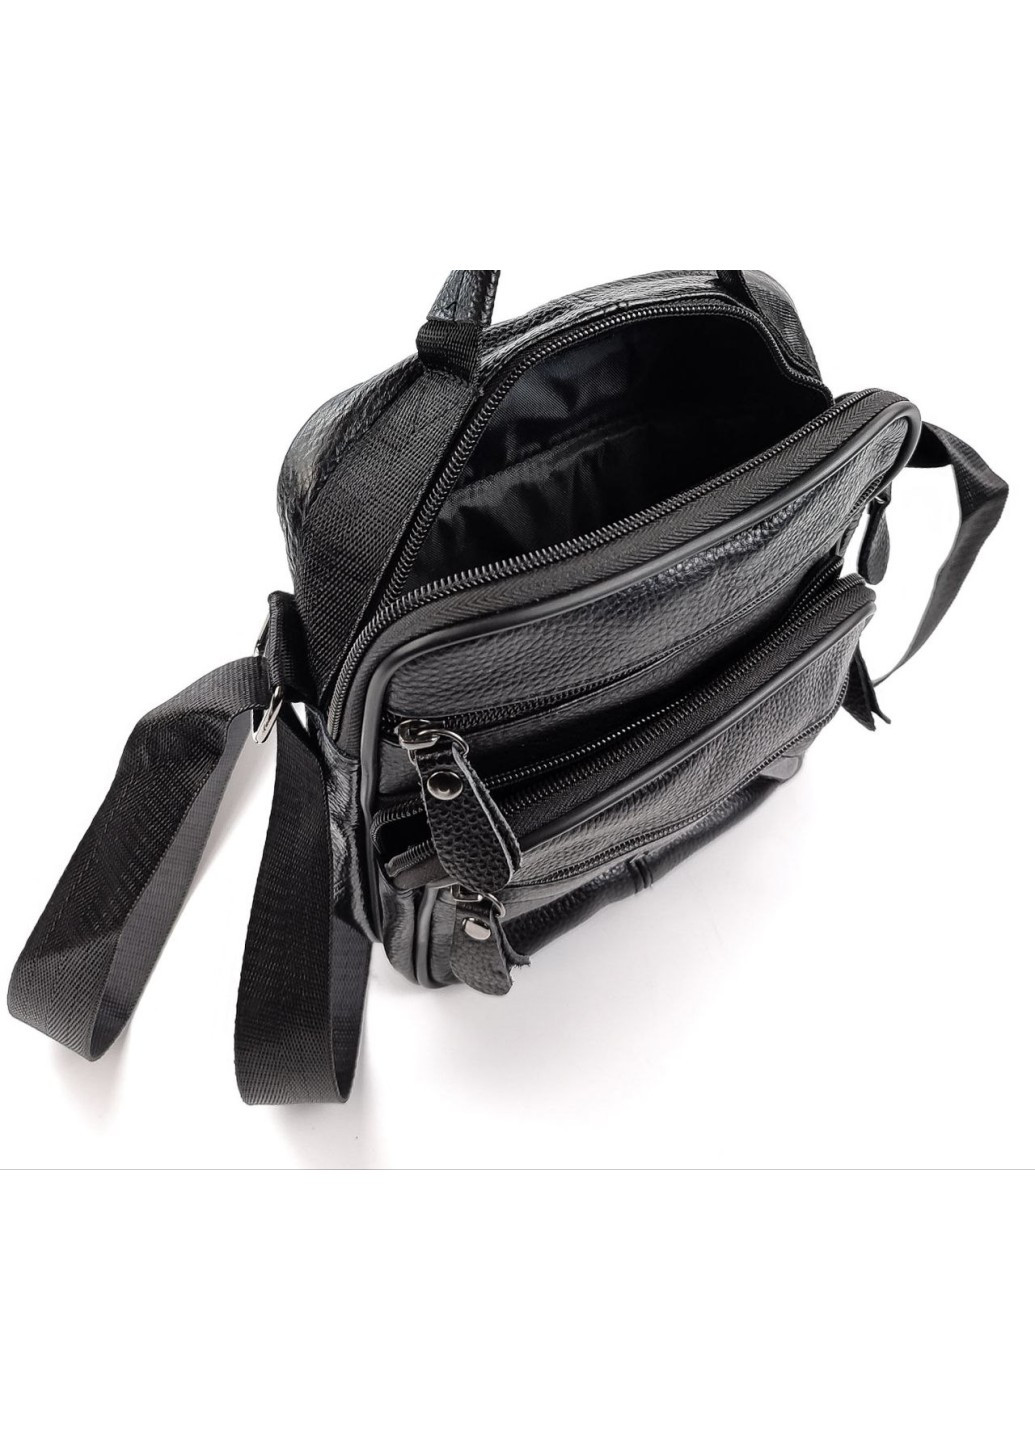 Качественная кожаная сумка мужская с ручкой для ладони KO-021-2 18x22x7-9 Черная JZ (259578222)